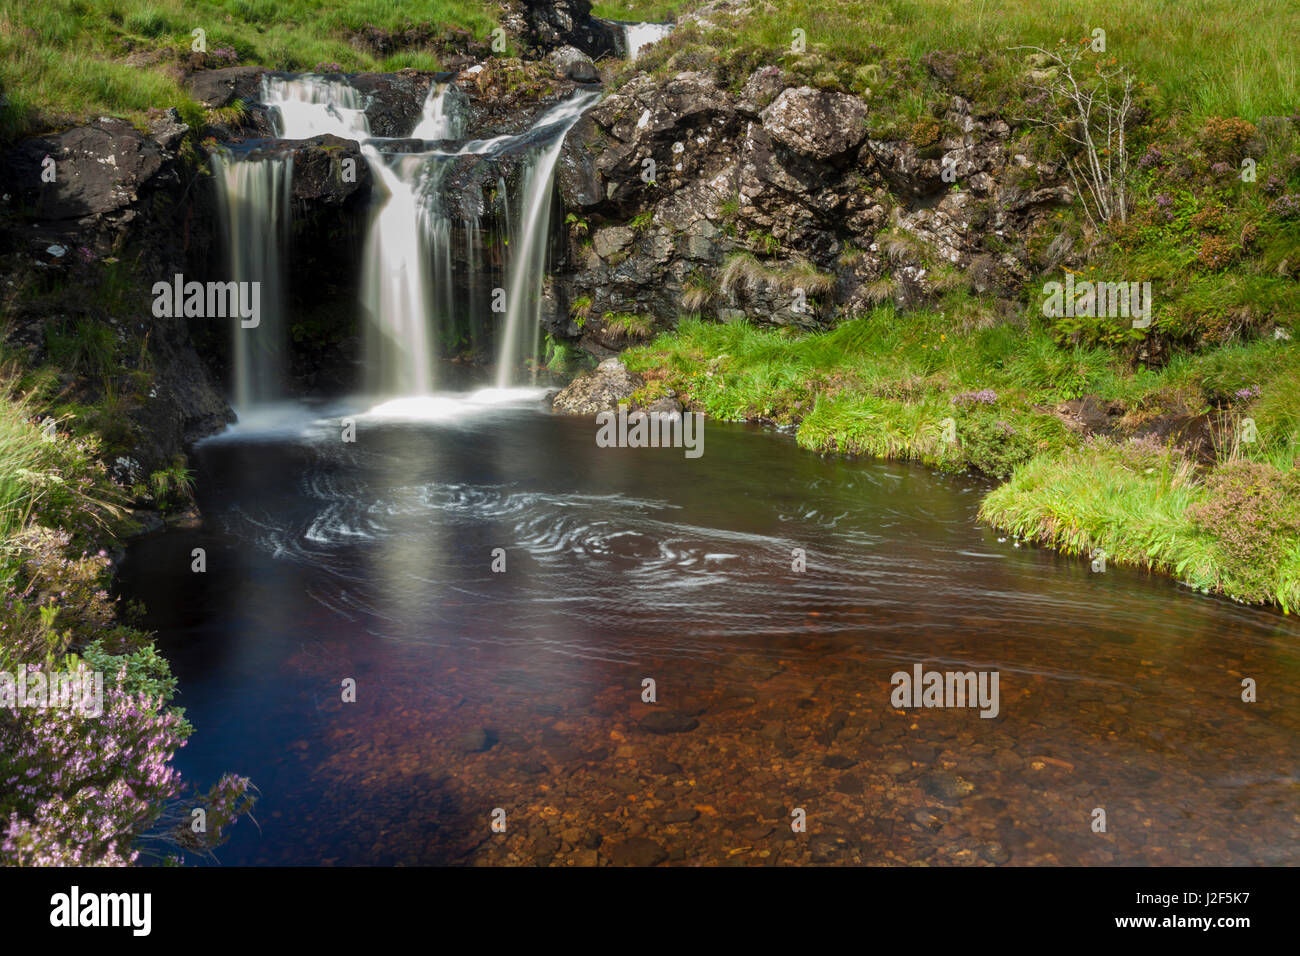 L'une des rivières qui à partir de la Black Cuillin mountains s'écoule de haut en bas et se caractérise par les nombreuses cascades et les piscines d'un bleu profond, la fée des piscines. Île de Skye, Écosse Banque D'Images